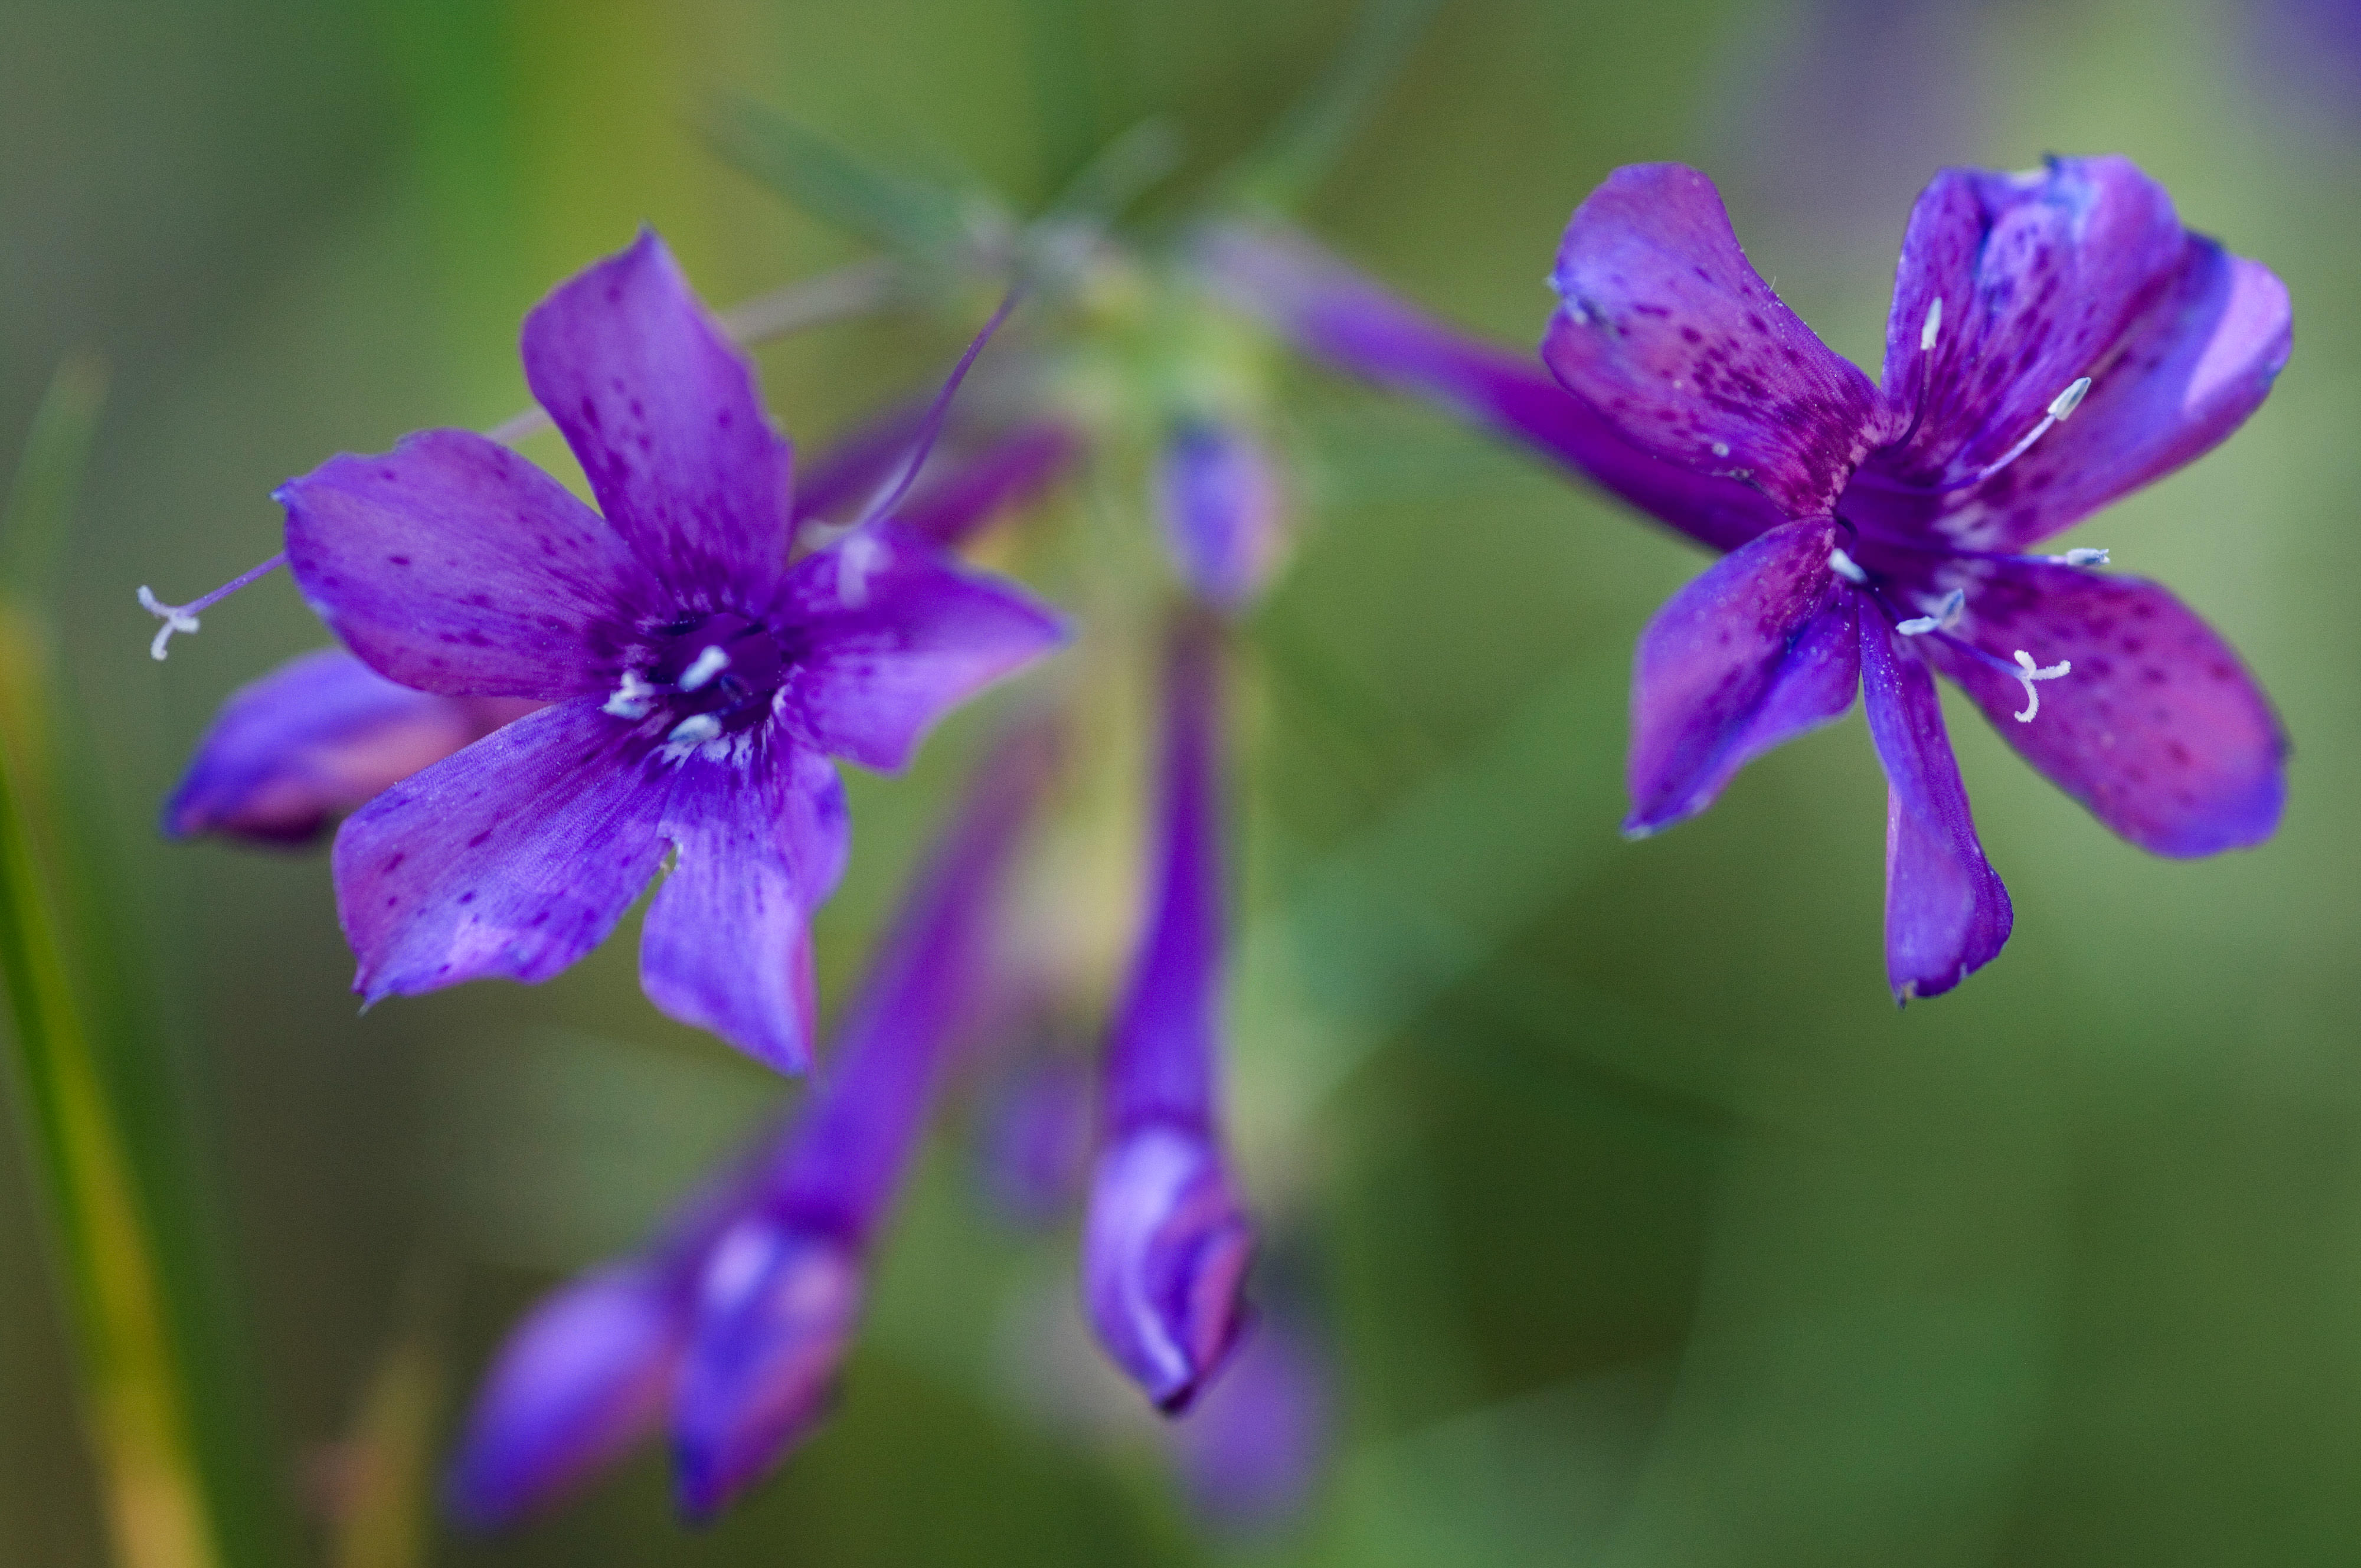 Closeup of purple wildflowers.